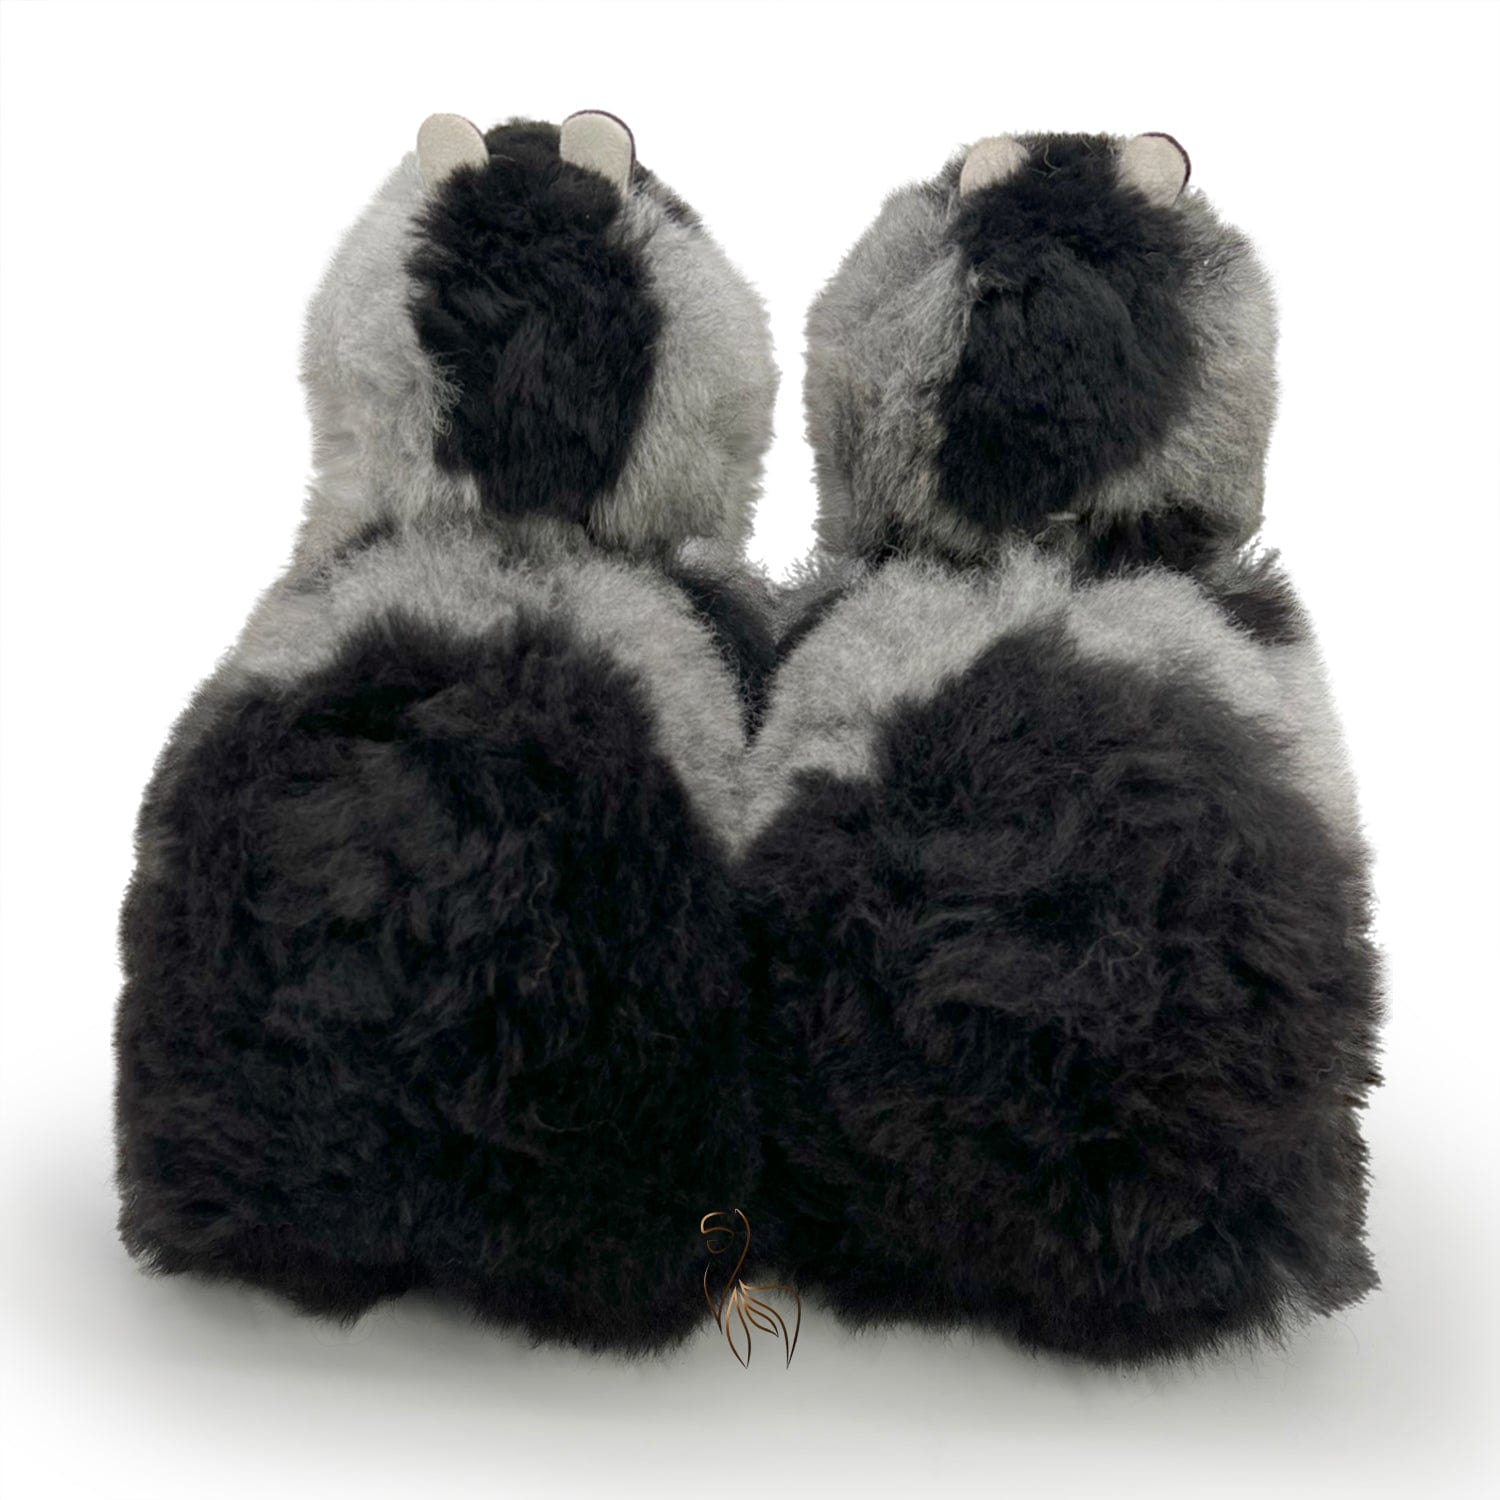 Grauer Fuchs – mittelgroßes Alpaka-Spielzeug (32 cm) – limitierte Auflage